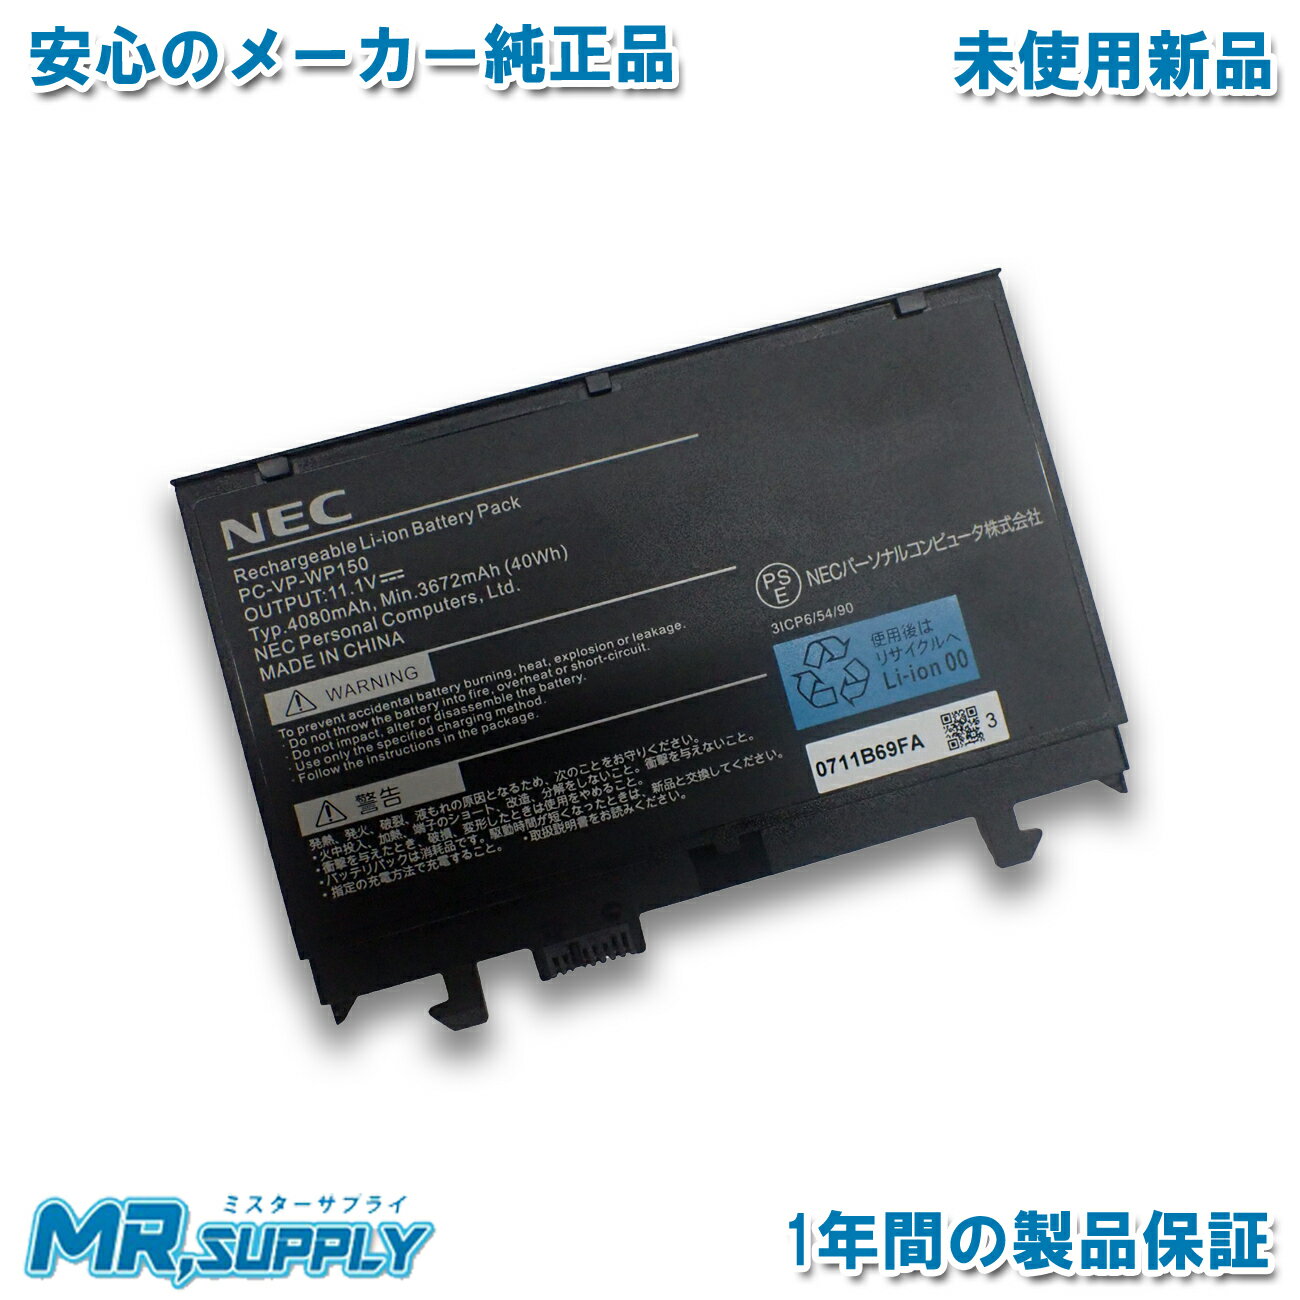 【純正】Gram 15 15z990-v.aa53c 7.7V 72Wh lg ノート PC ノートパソコン 純正 交換バッテリー